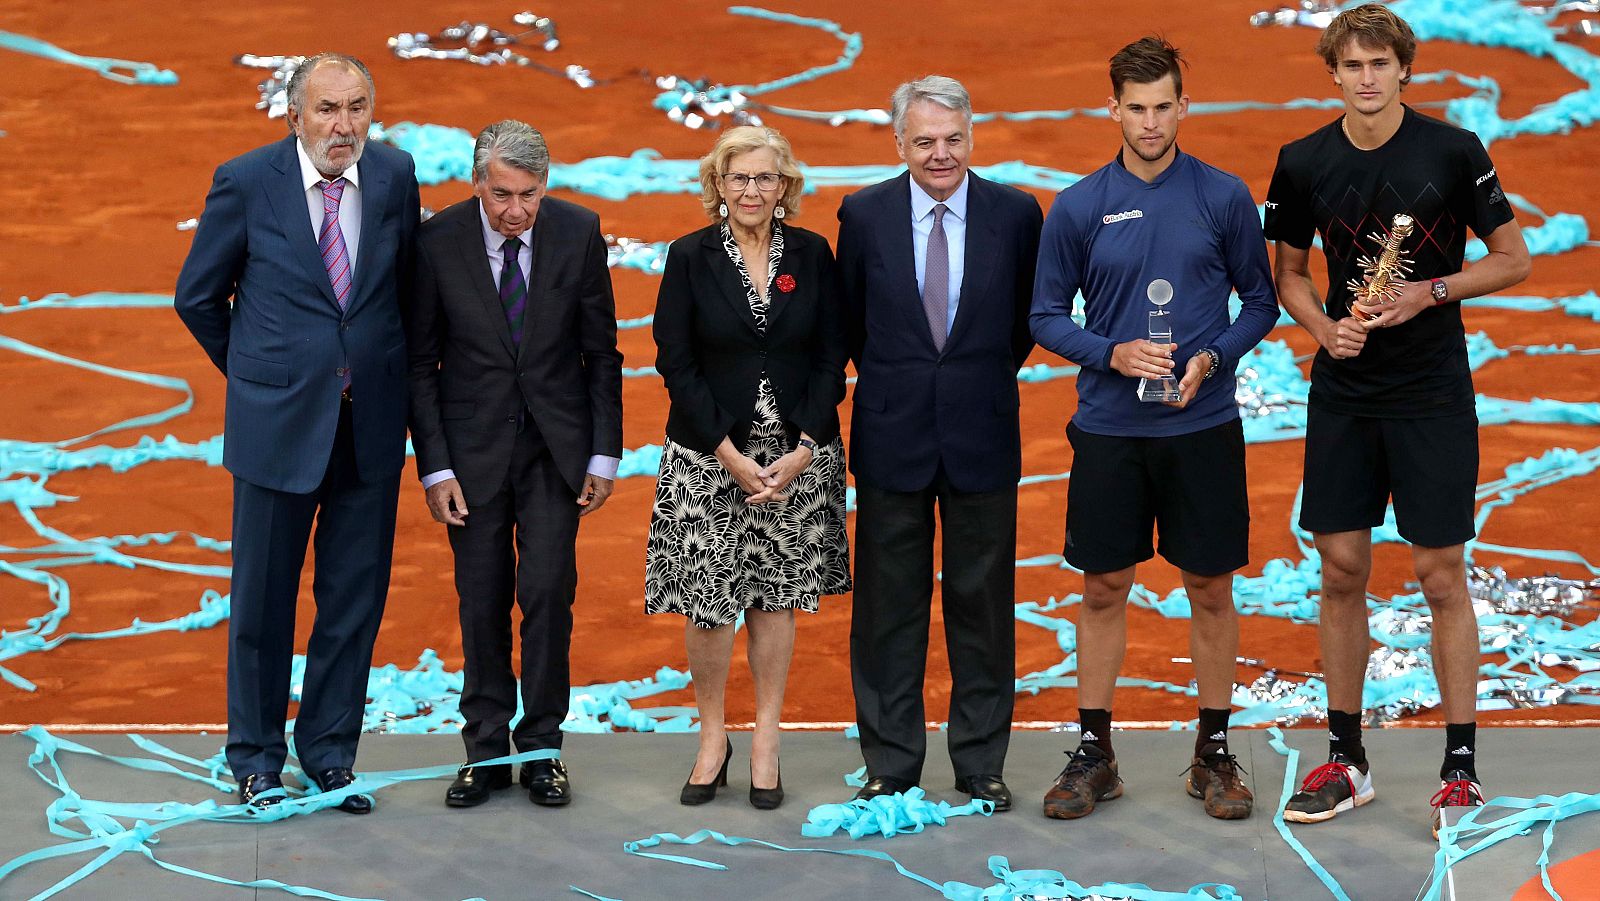 Entrega de trofeos del Madrid Open 2018 con el propietario del torneo, Ion Tiriac, a la izquierda y la alcaldesa de Madrid, Manuela Carmena, en el centro.